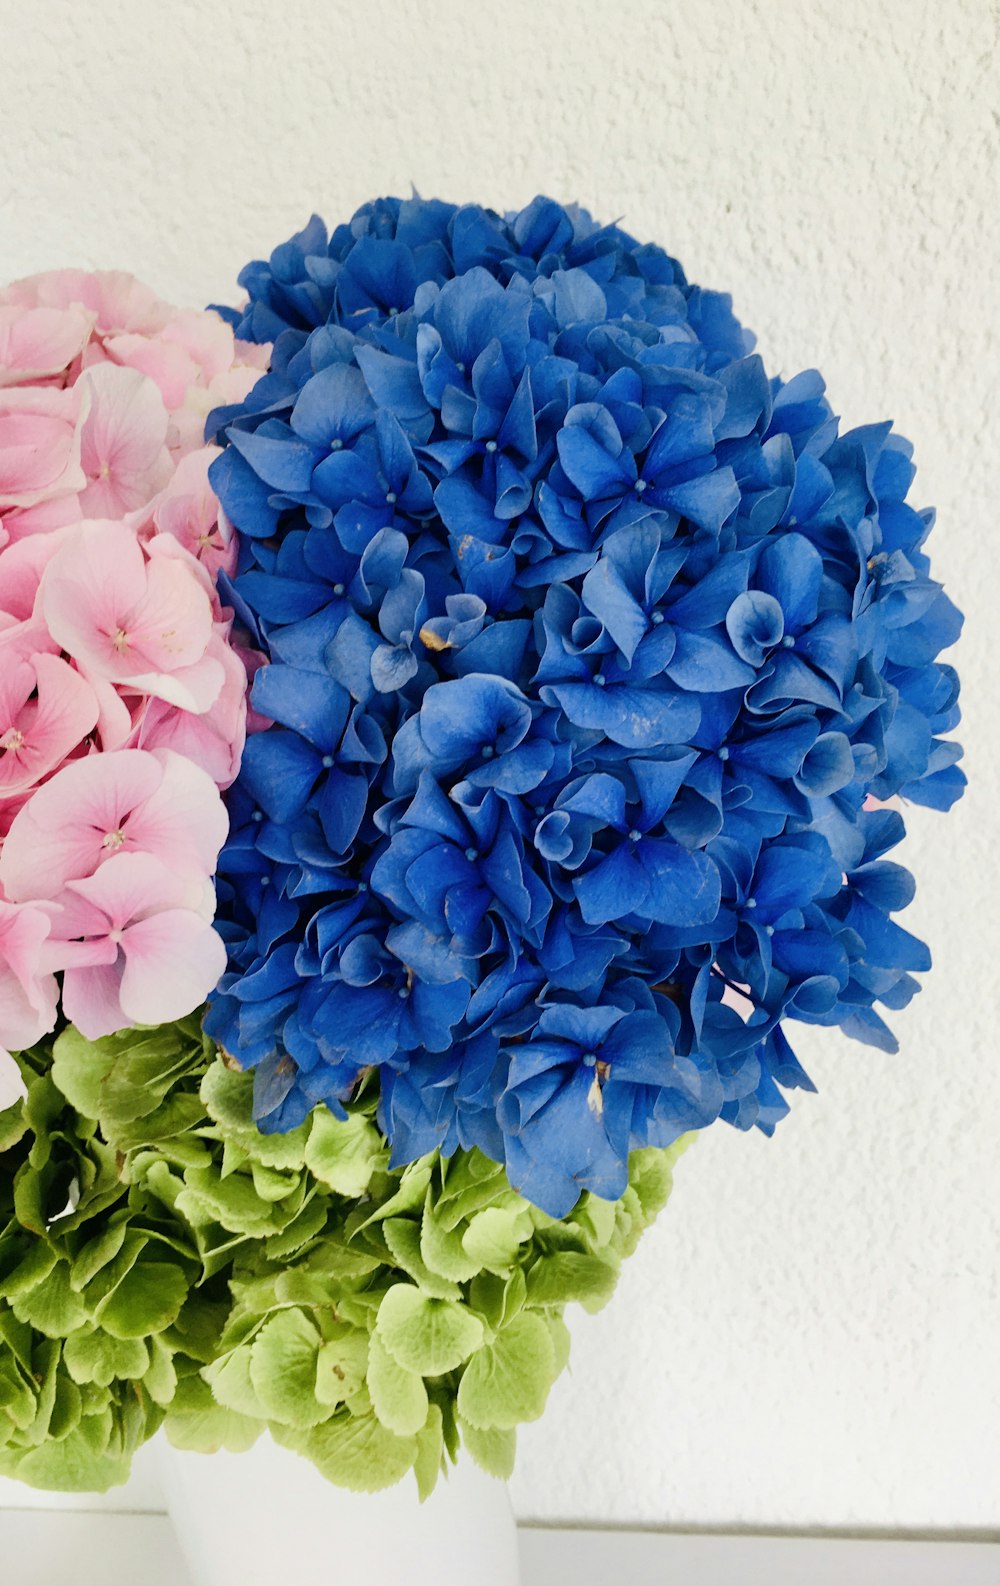 bouquet de fleurs bleues sur table blanche